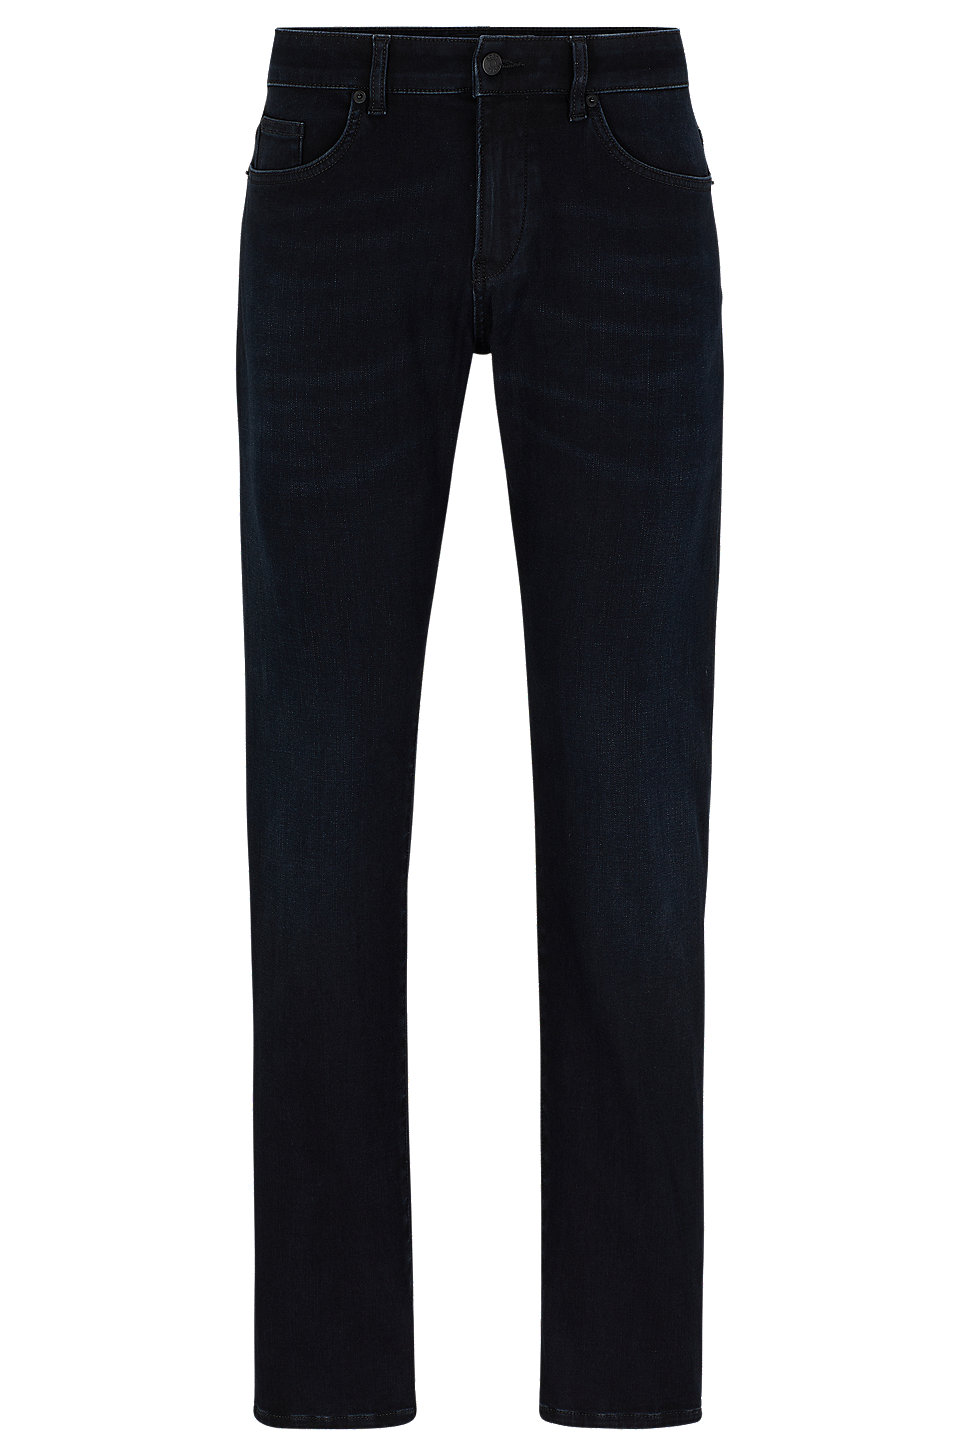 BOSS - Slim-fit jeans in blue cozy-knit denim